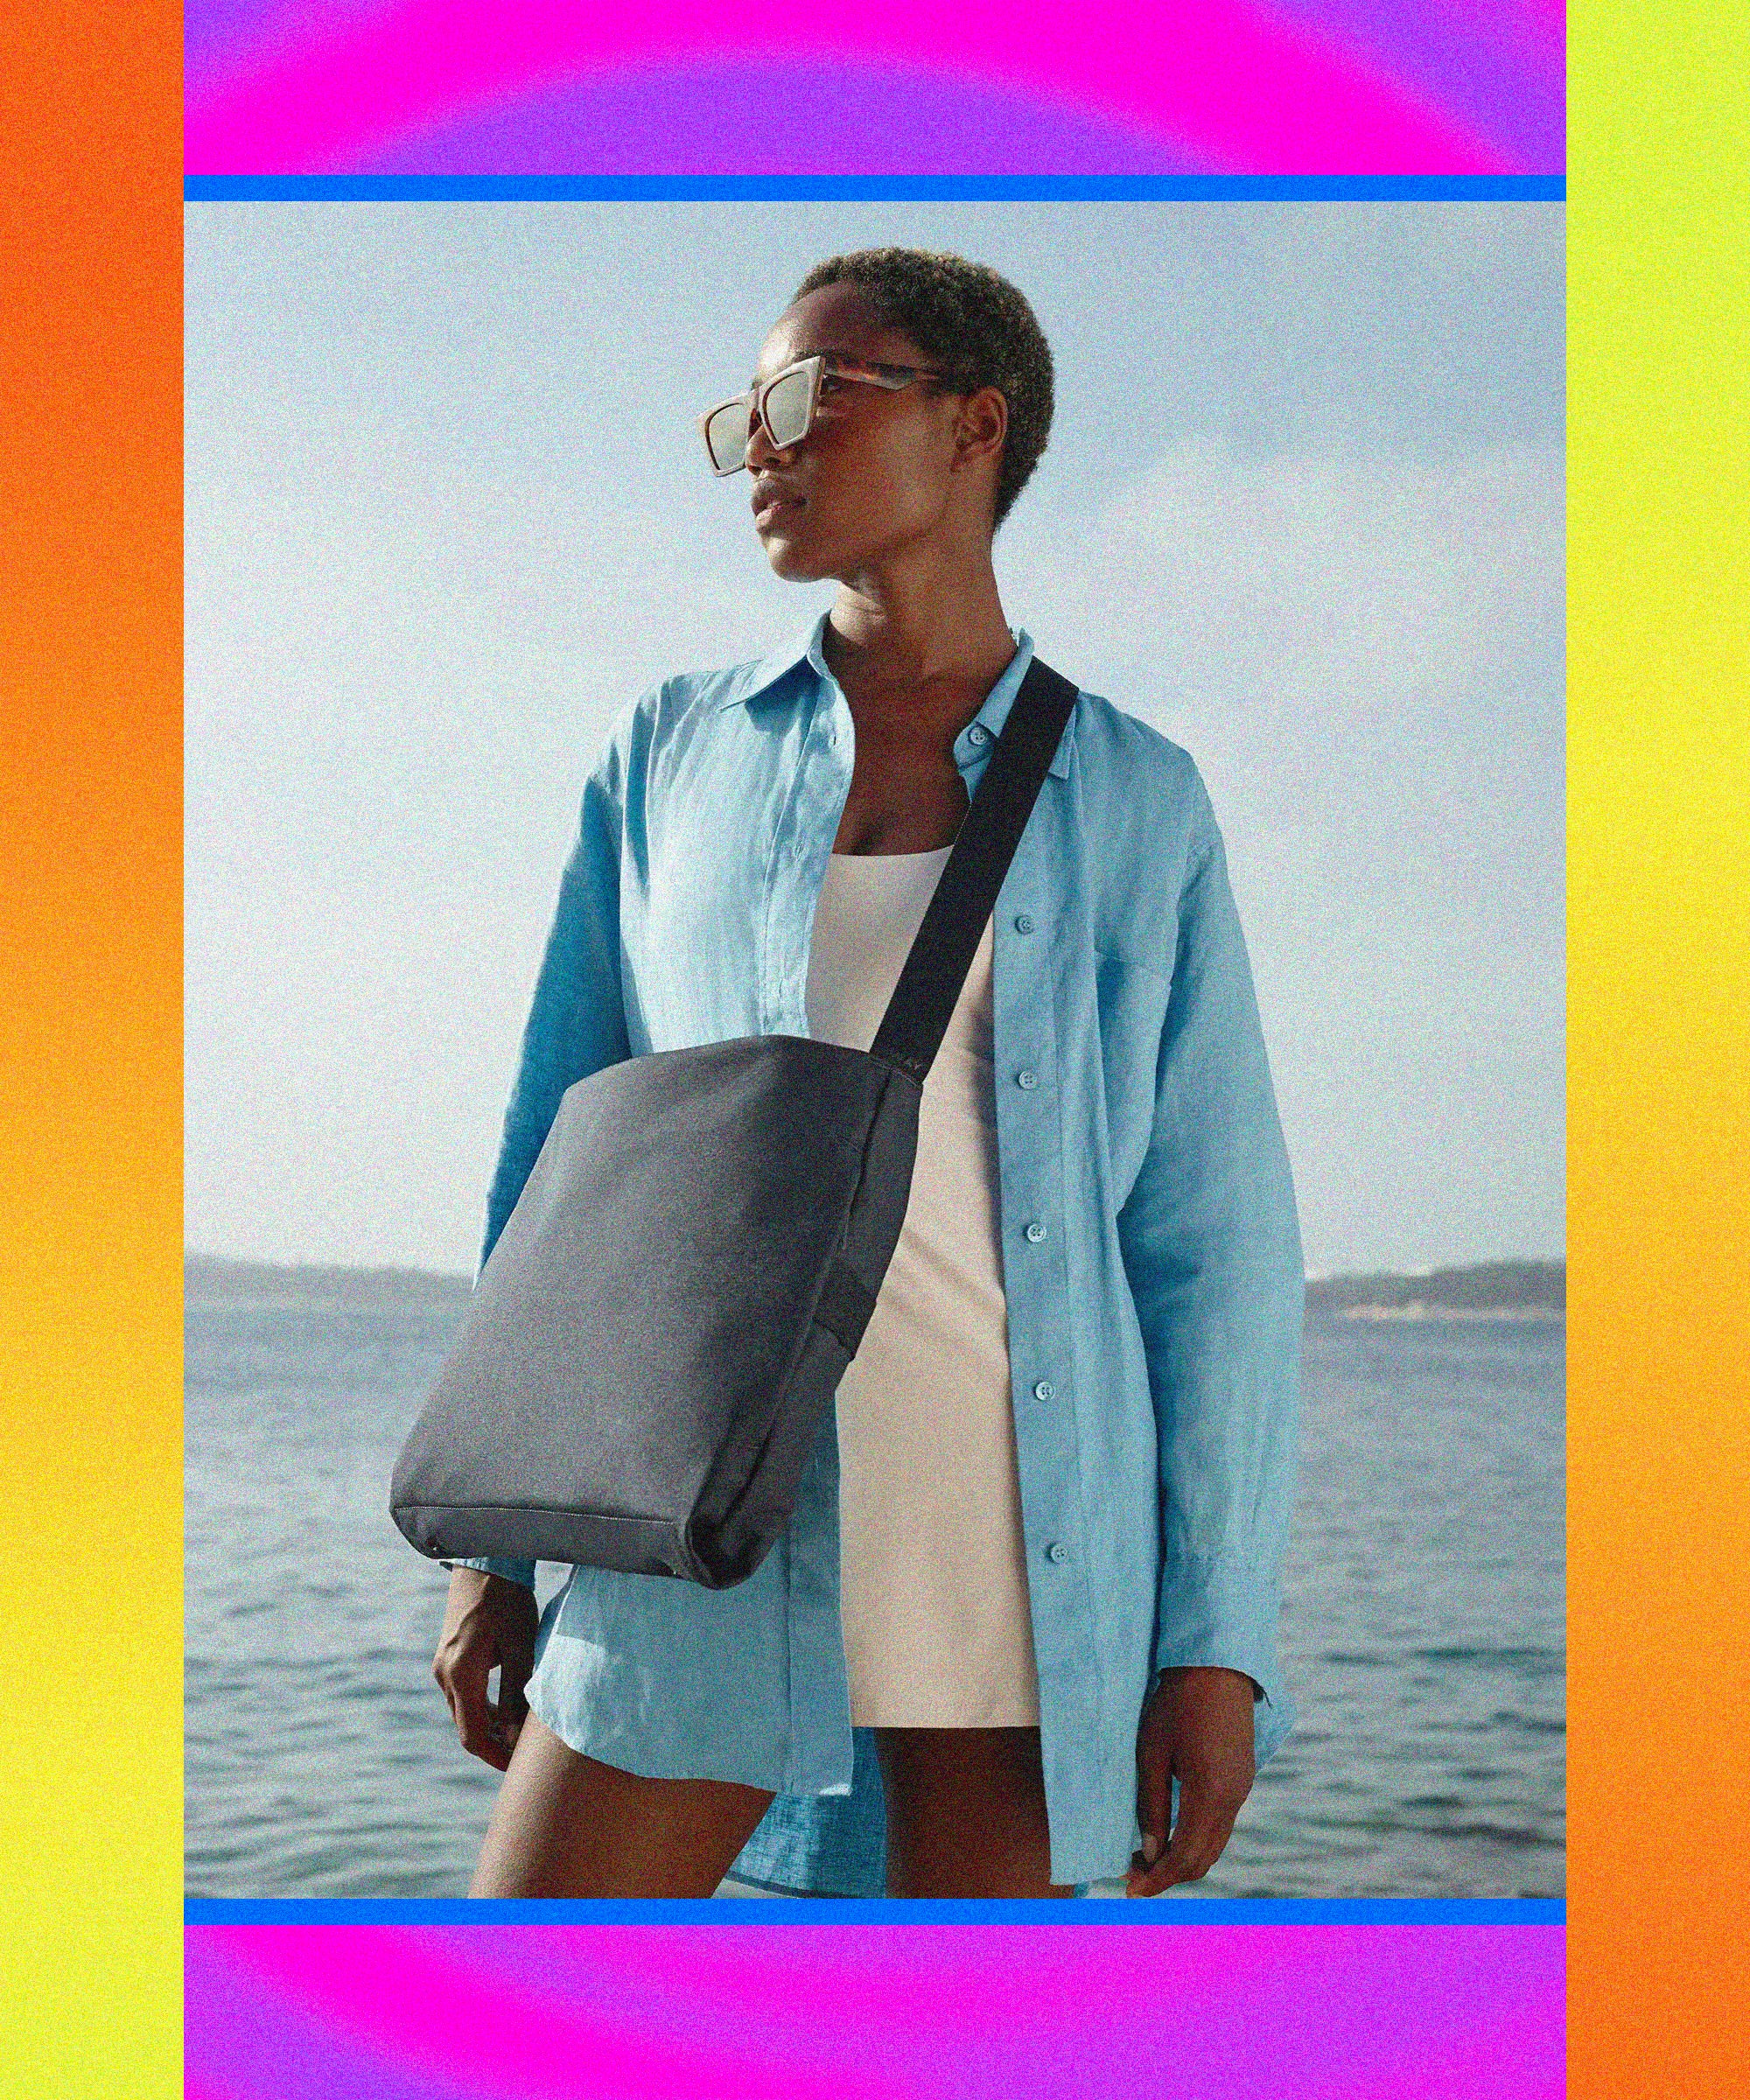 Jane Birkin Wants Hermès to Take Her Name Off Its Classic Bag [Updated]